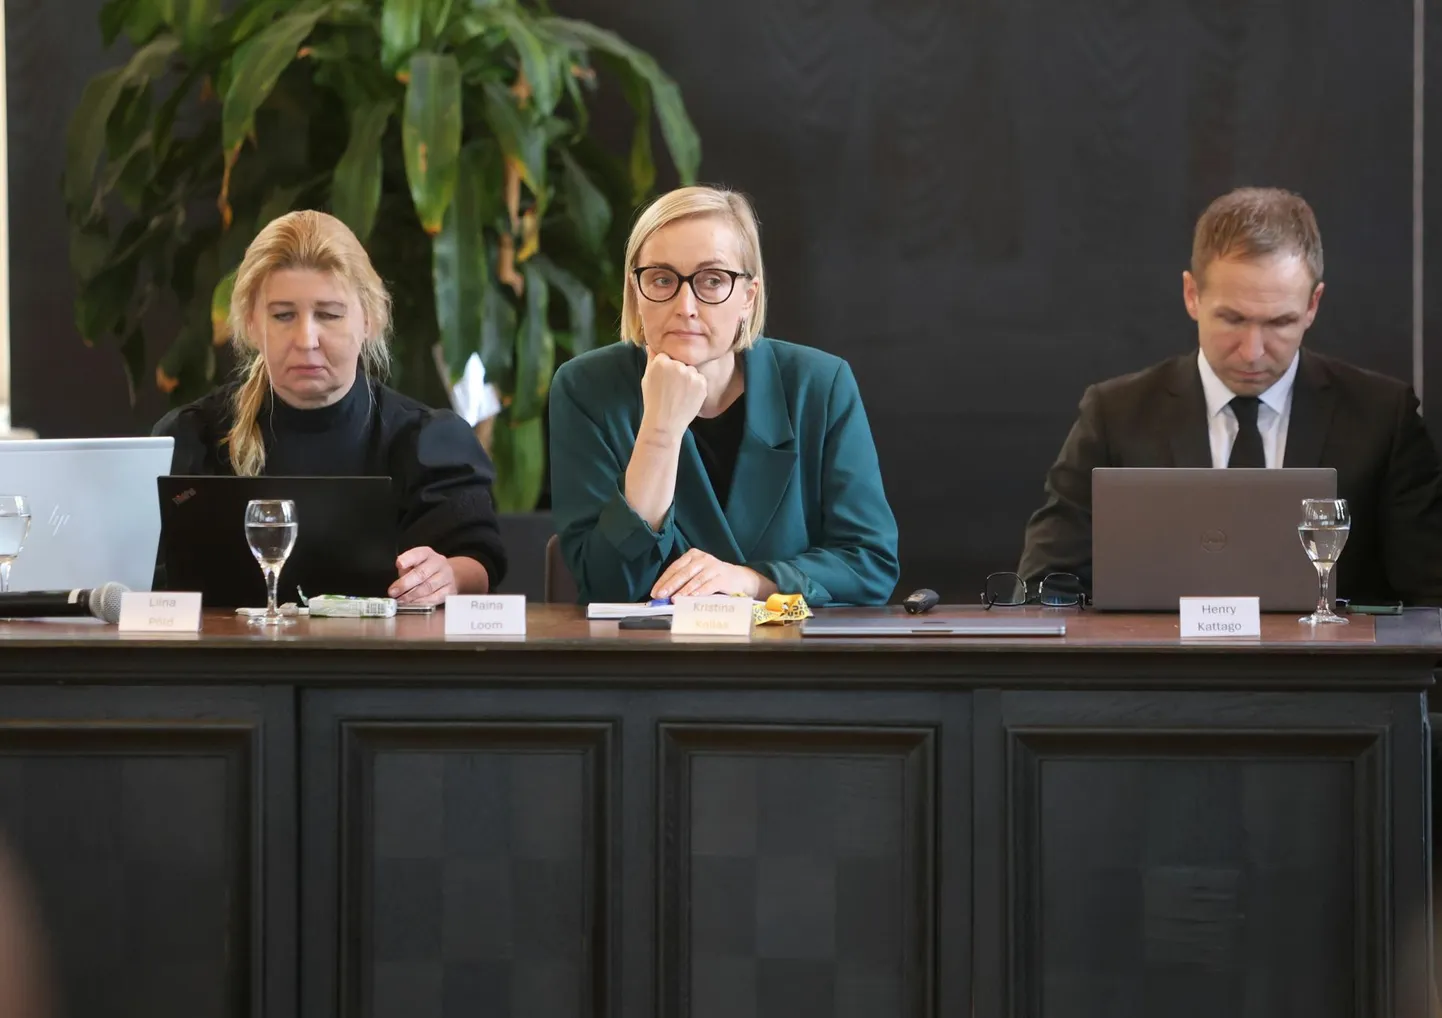 Esmaspäeval algasid haridus- ja teadusministeeriumi eestvõttel läbirääkimised pikaajalise haridusleppe sõlmimiseks. Pildil rohelises haridusminister Kristina Kallas.